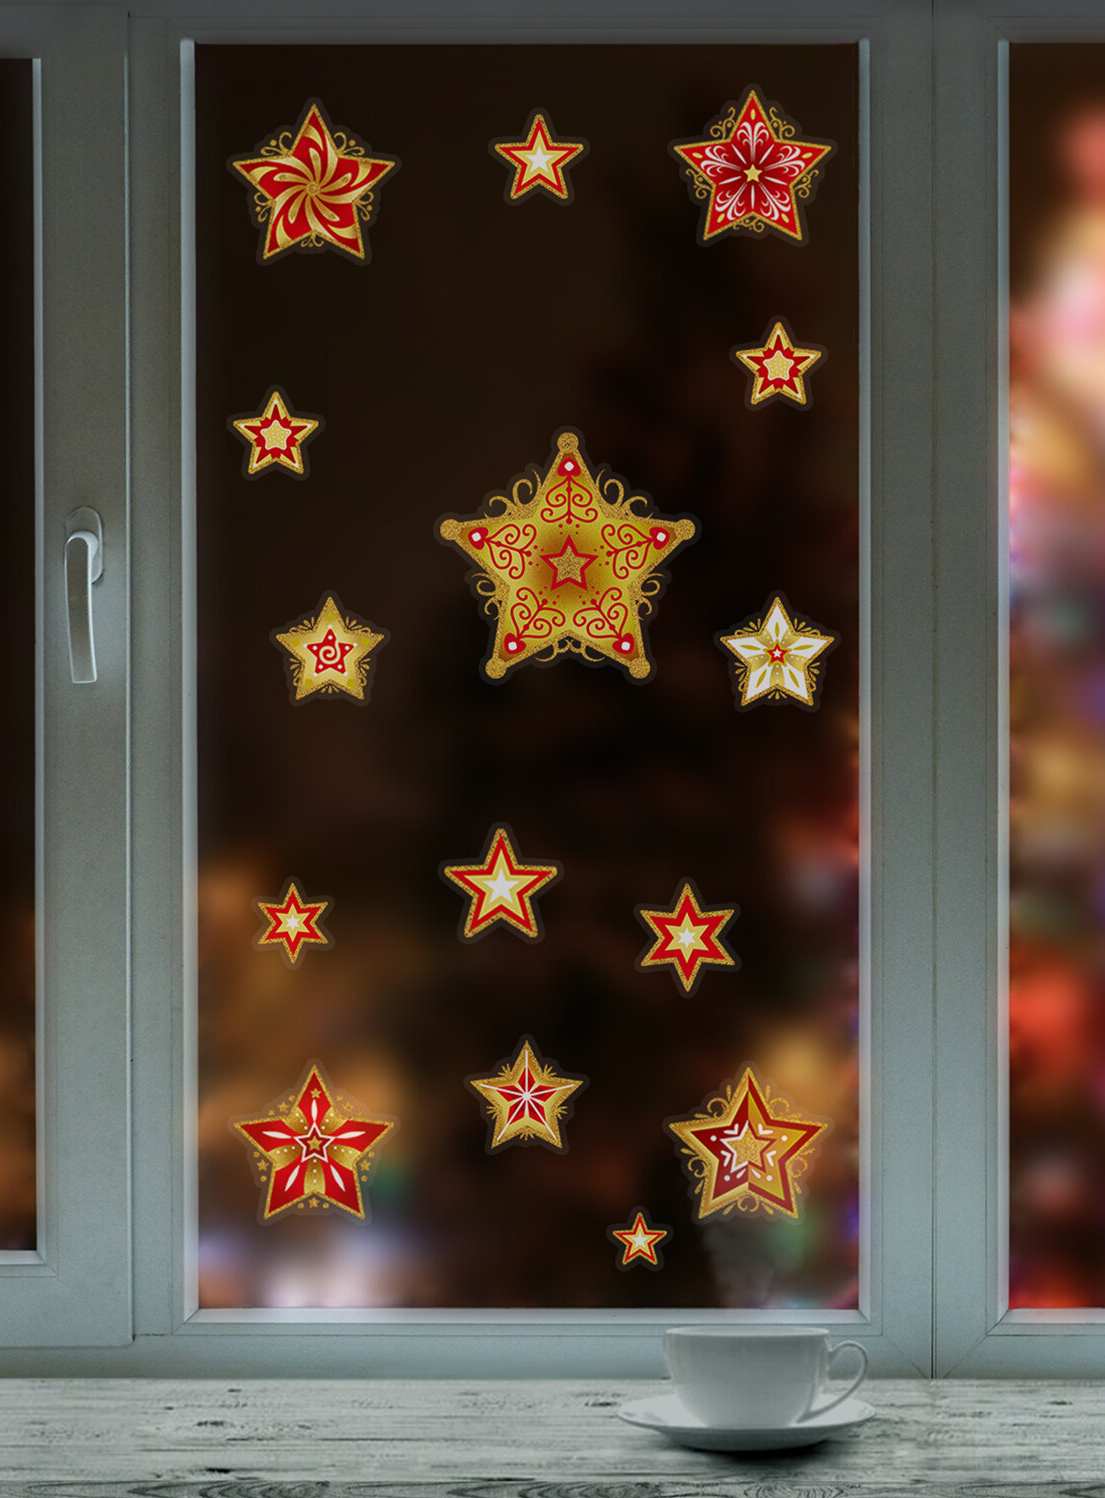 картинка Новогоднее оконное украшение, 30*38см, ПВХ, "Красно-золотые снежинки 3", 591209 от магазина Альфанит в Кунгуре